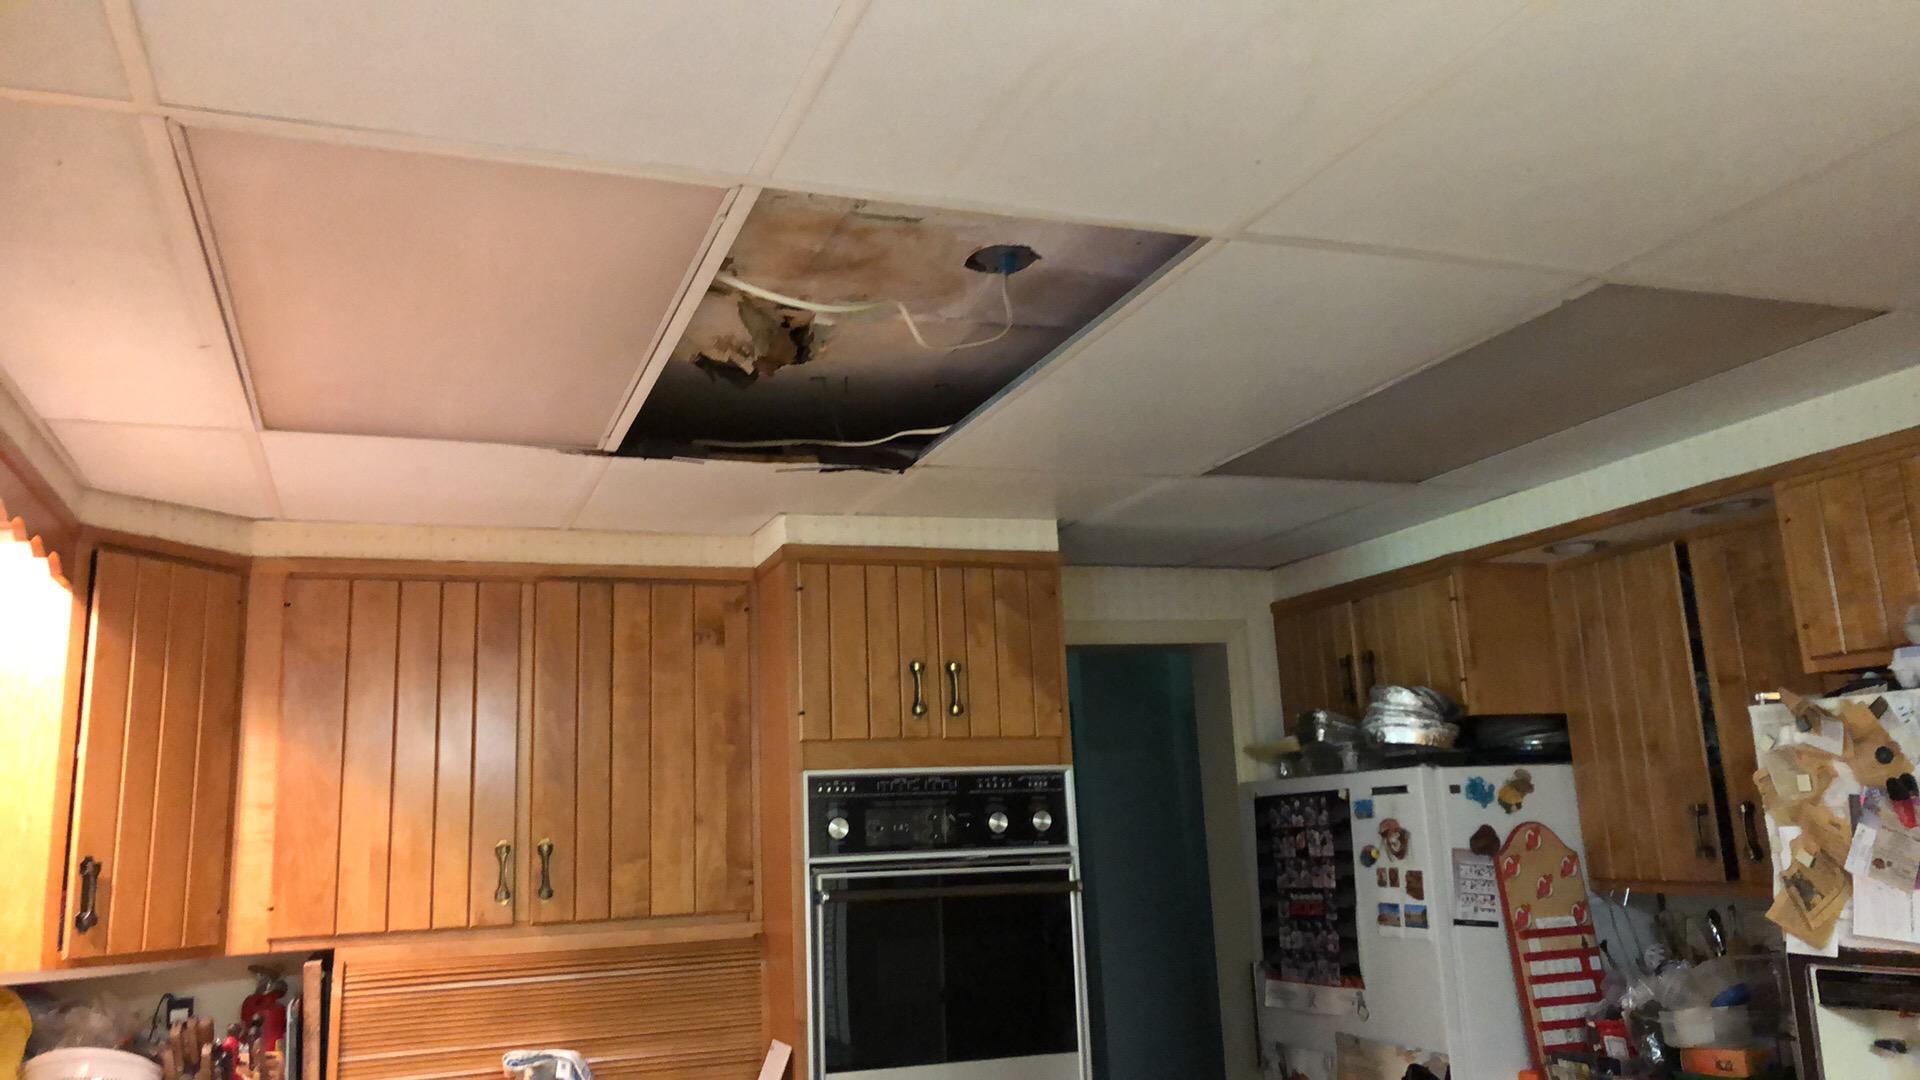 Water damage in kitchen